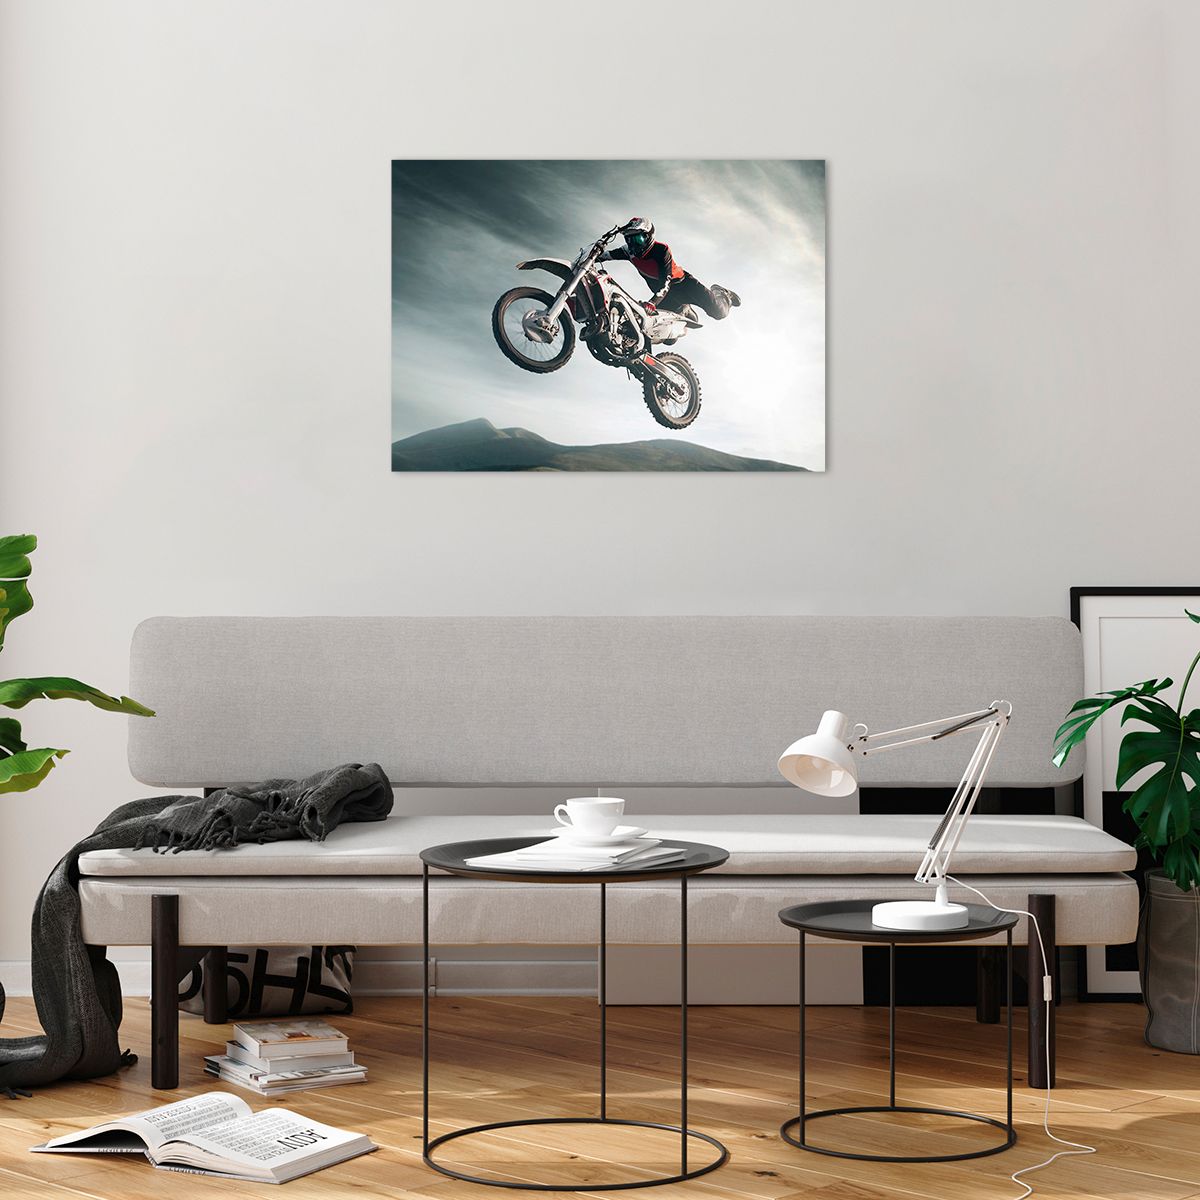 Bilder auf glas Moto-Cross, Bilder auf glas Motorrad, Bilder auf glas Motorradfahrer, Bilder auf glas Motocross-Wettbewerb, Bilder auf glas Sport